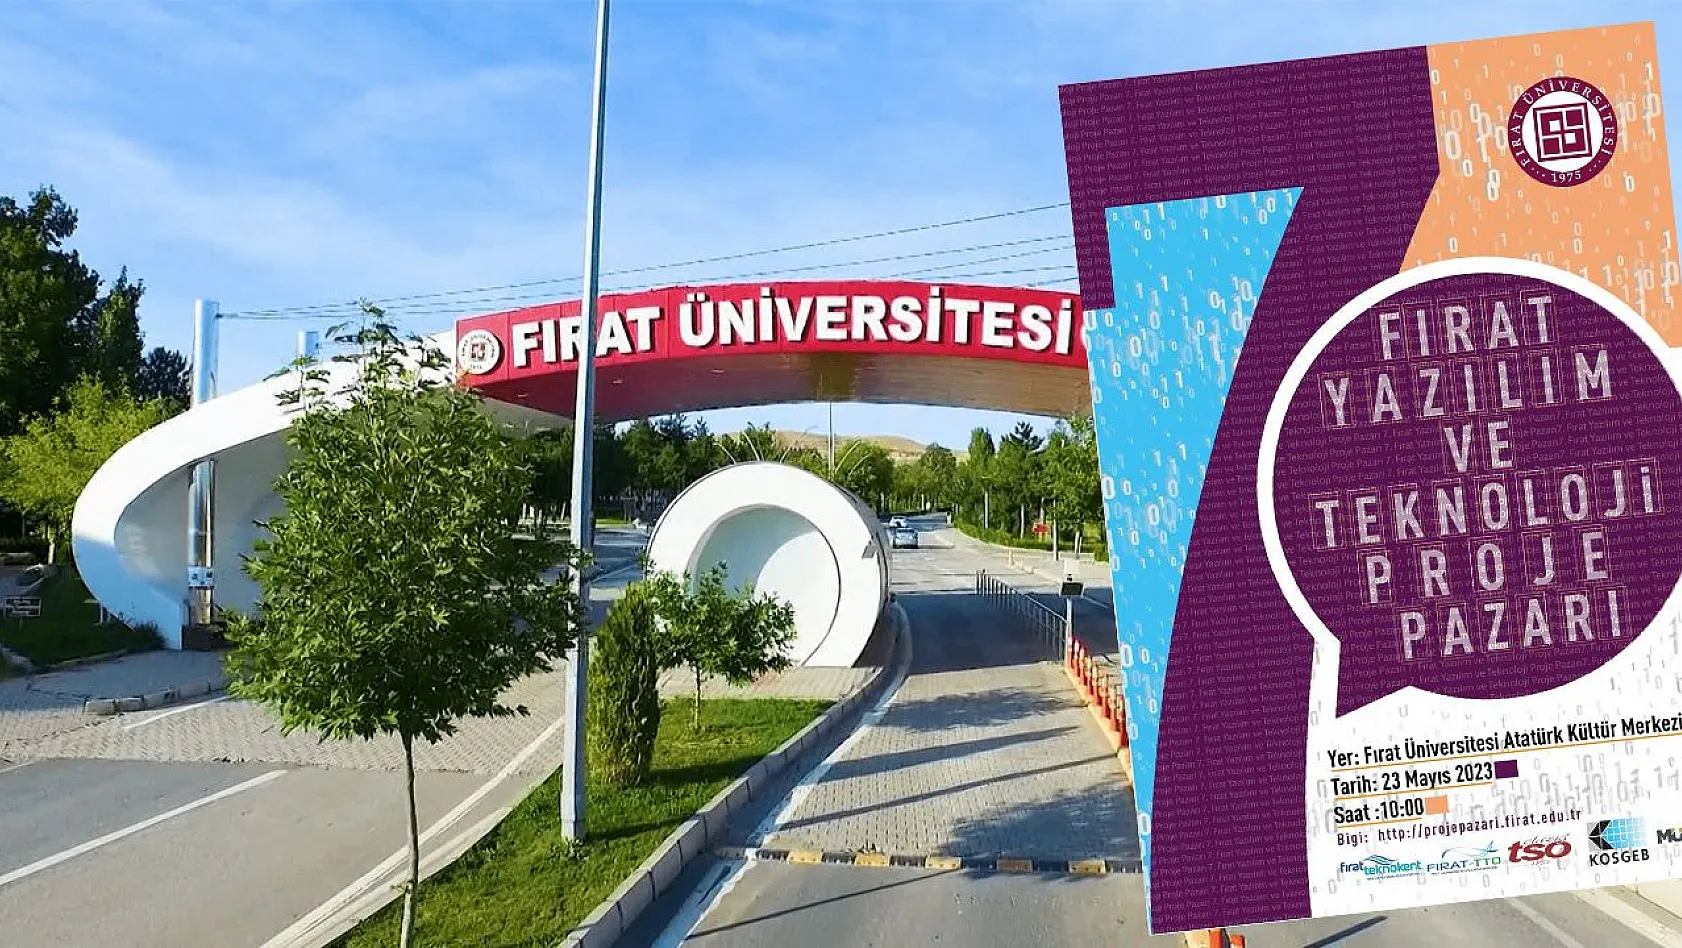 Fırat Üniversitesi'nde 7. Fırat Yazılım ve Teknoloji Proje Pazarı Düzenlenecek